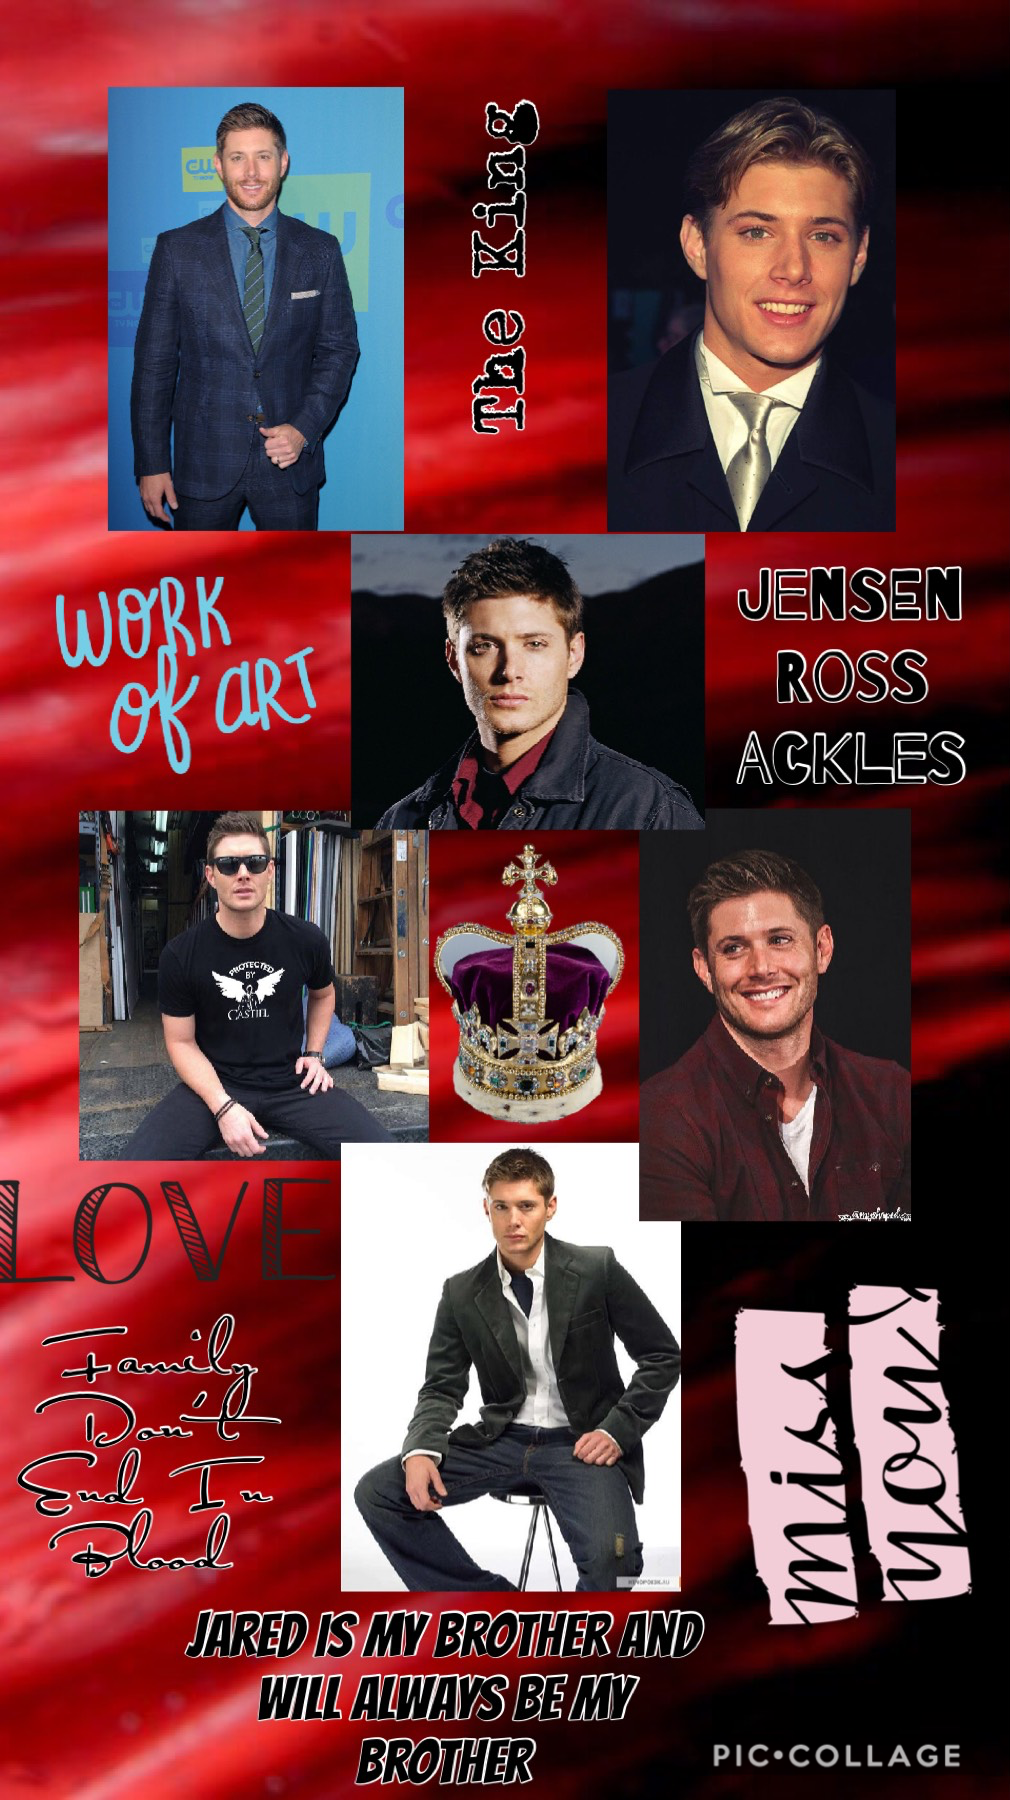 Jensen Ackles 